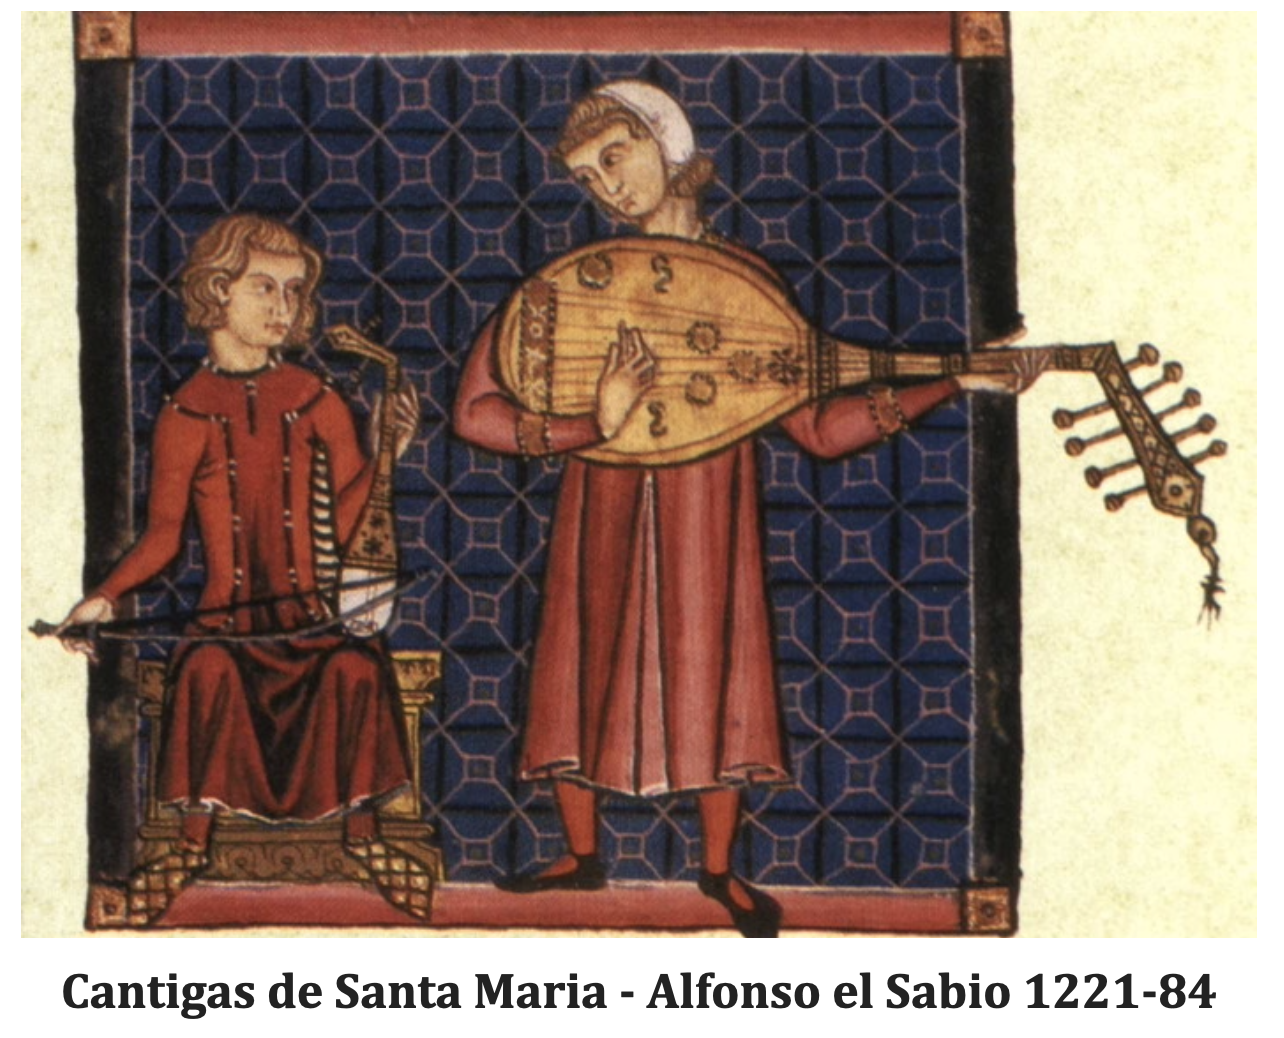 Ud Player - Cantigas de Santa Maria of Alfonso X el Sabio c.1250.png